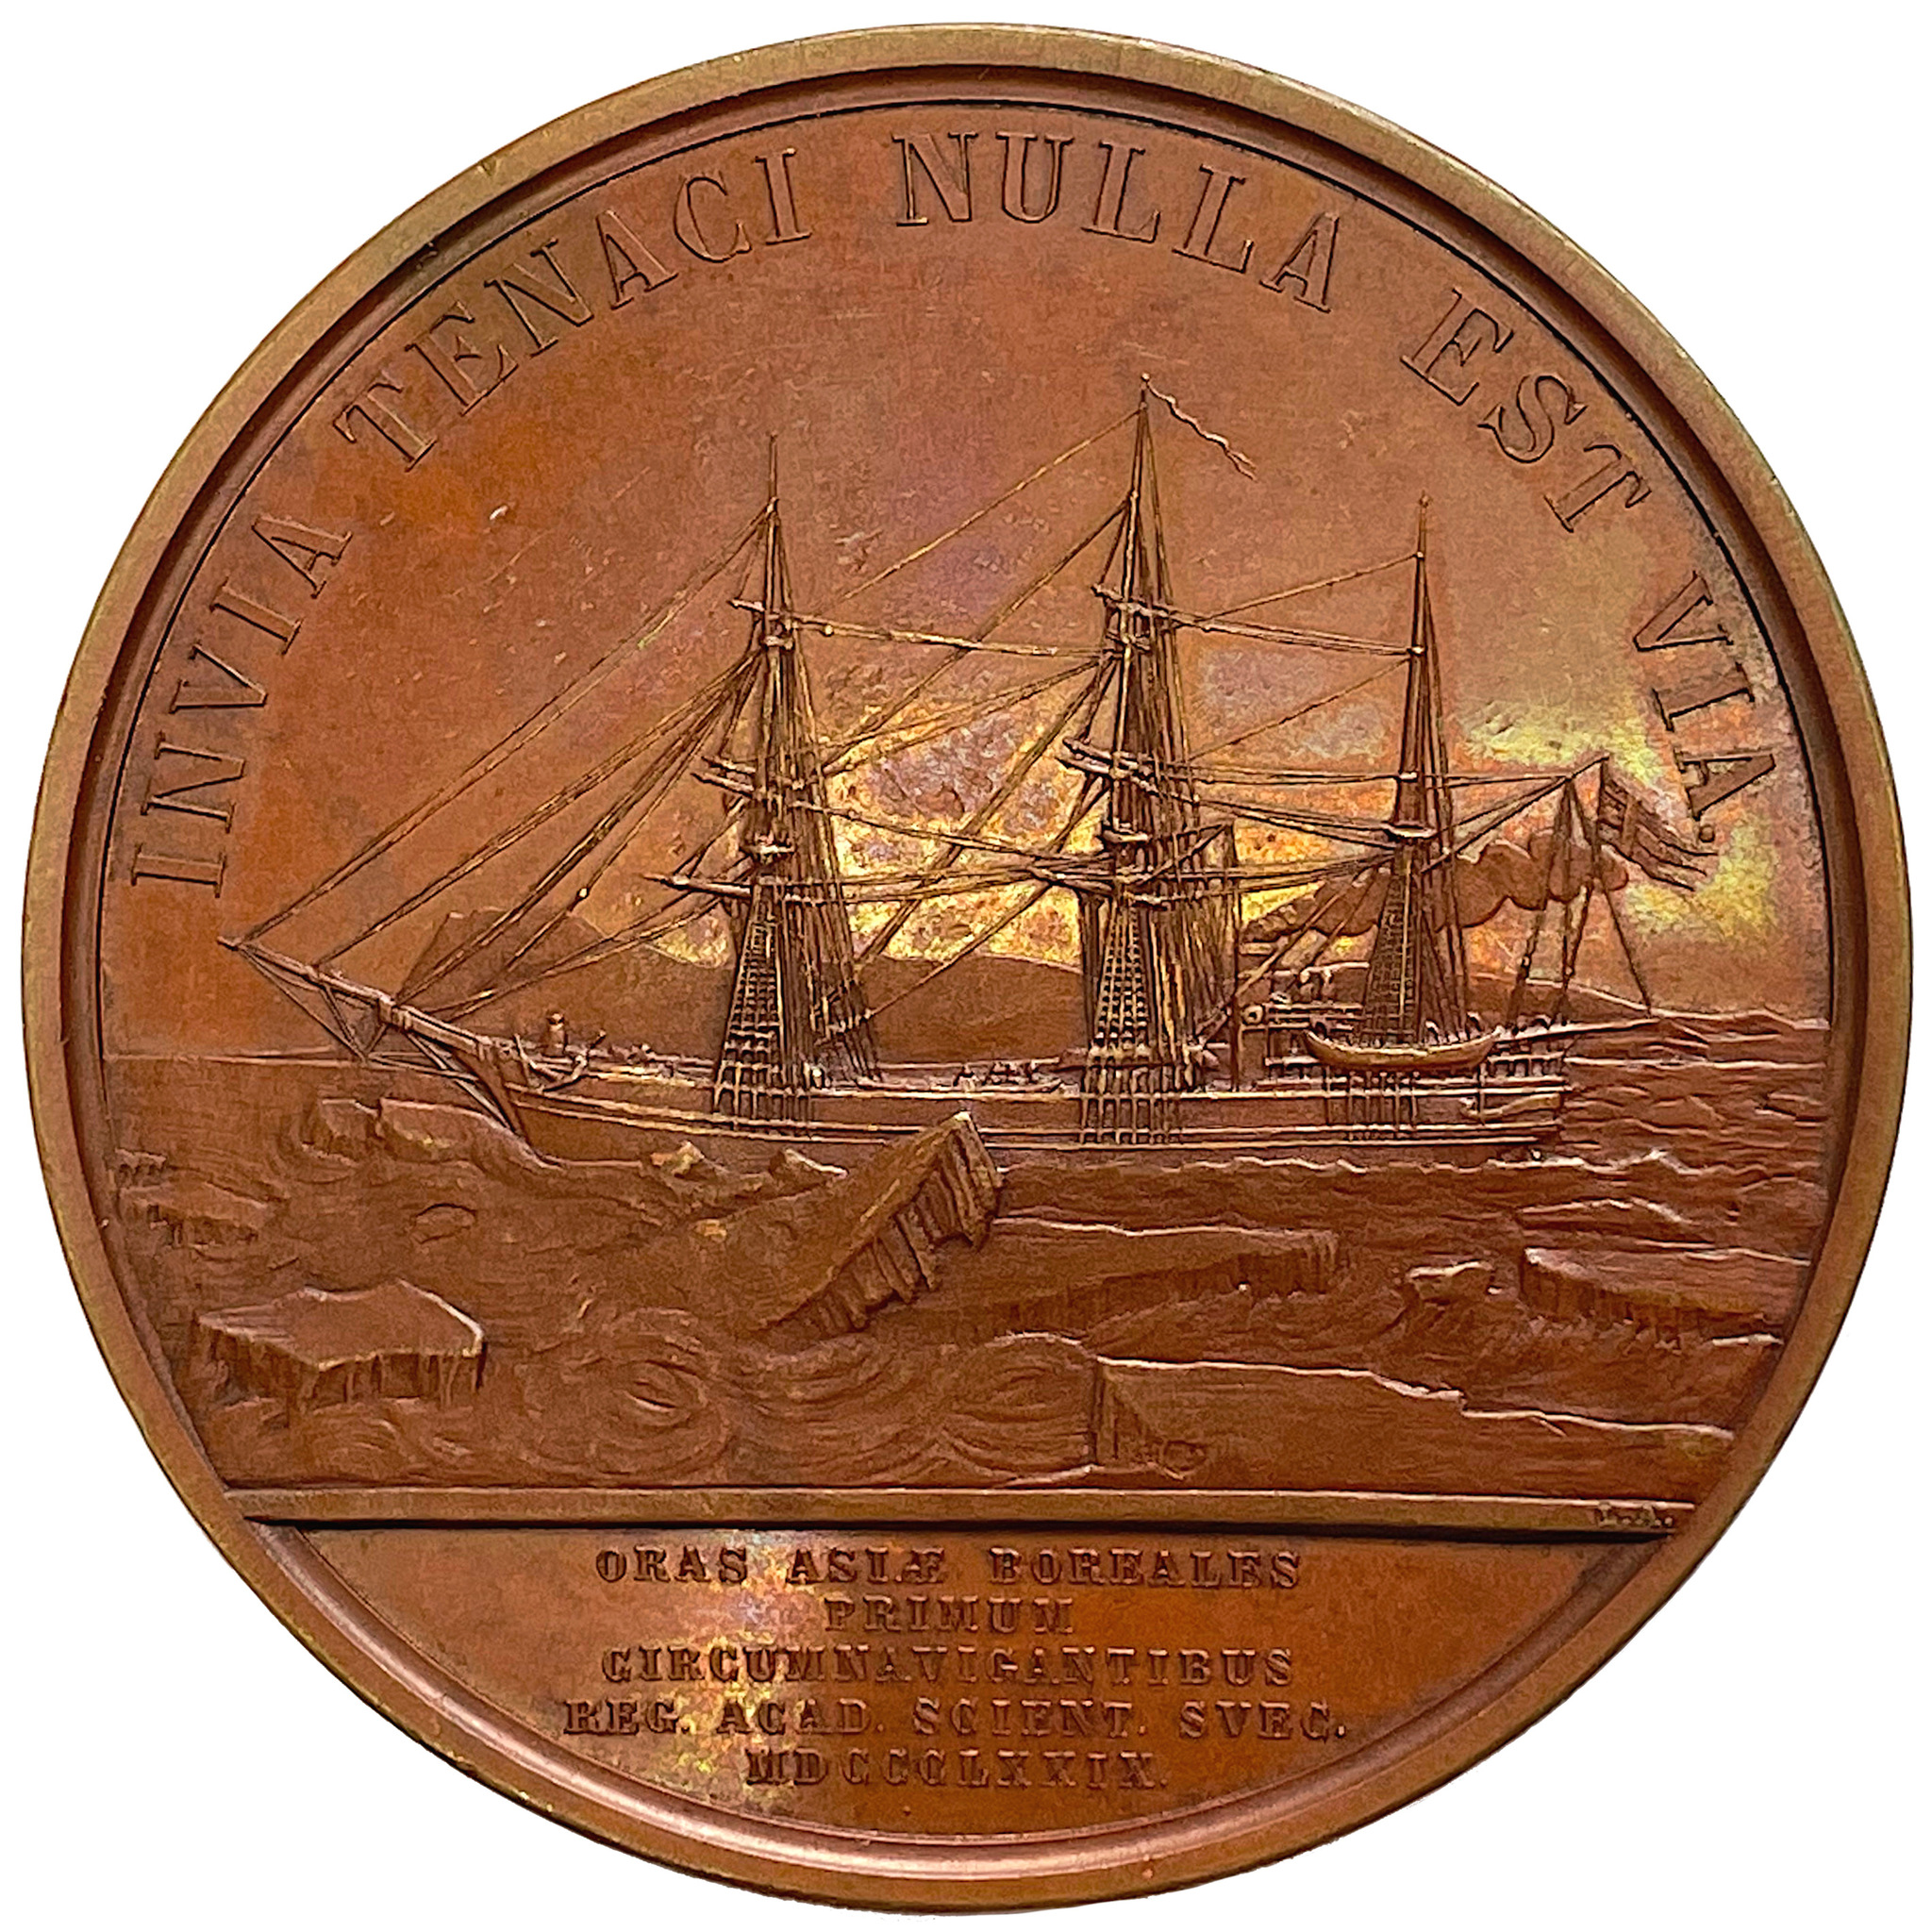 Nordostpassagen genomseglades 1878-1880 av Nordenskiöld med skeppet Vega av Lea Ahlborn